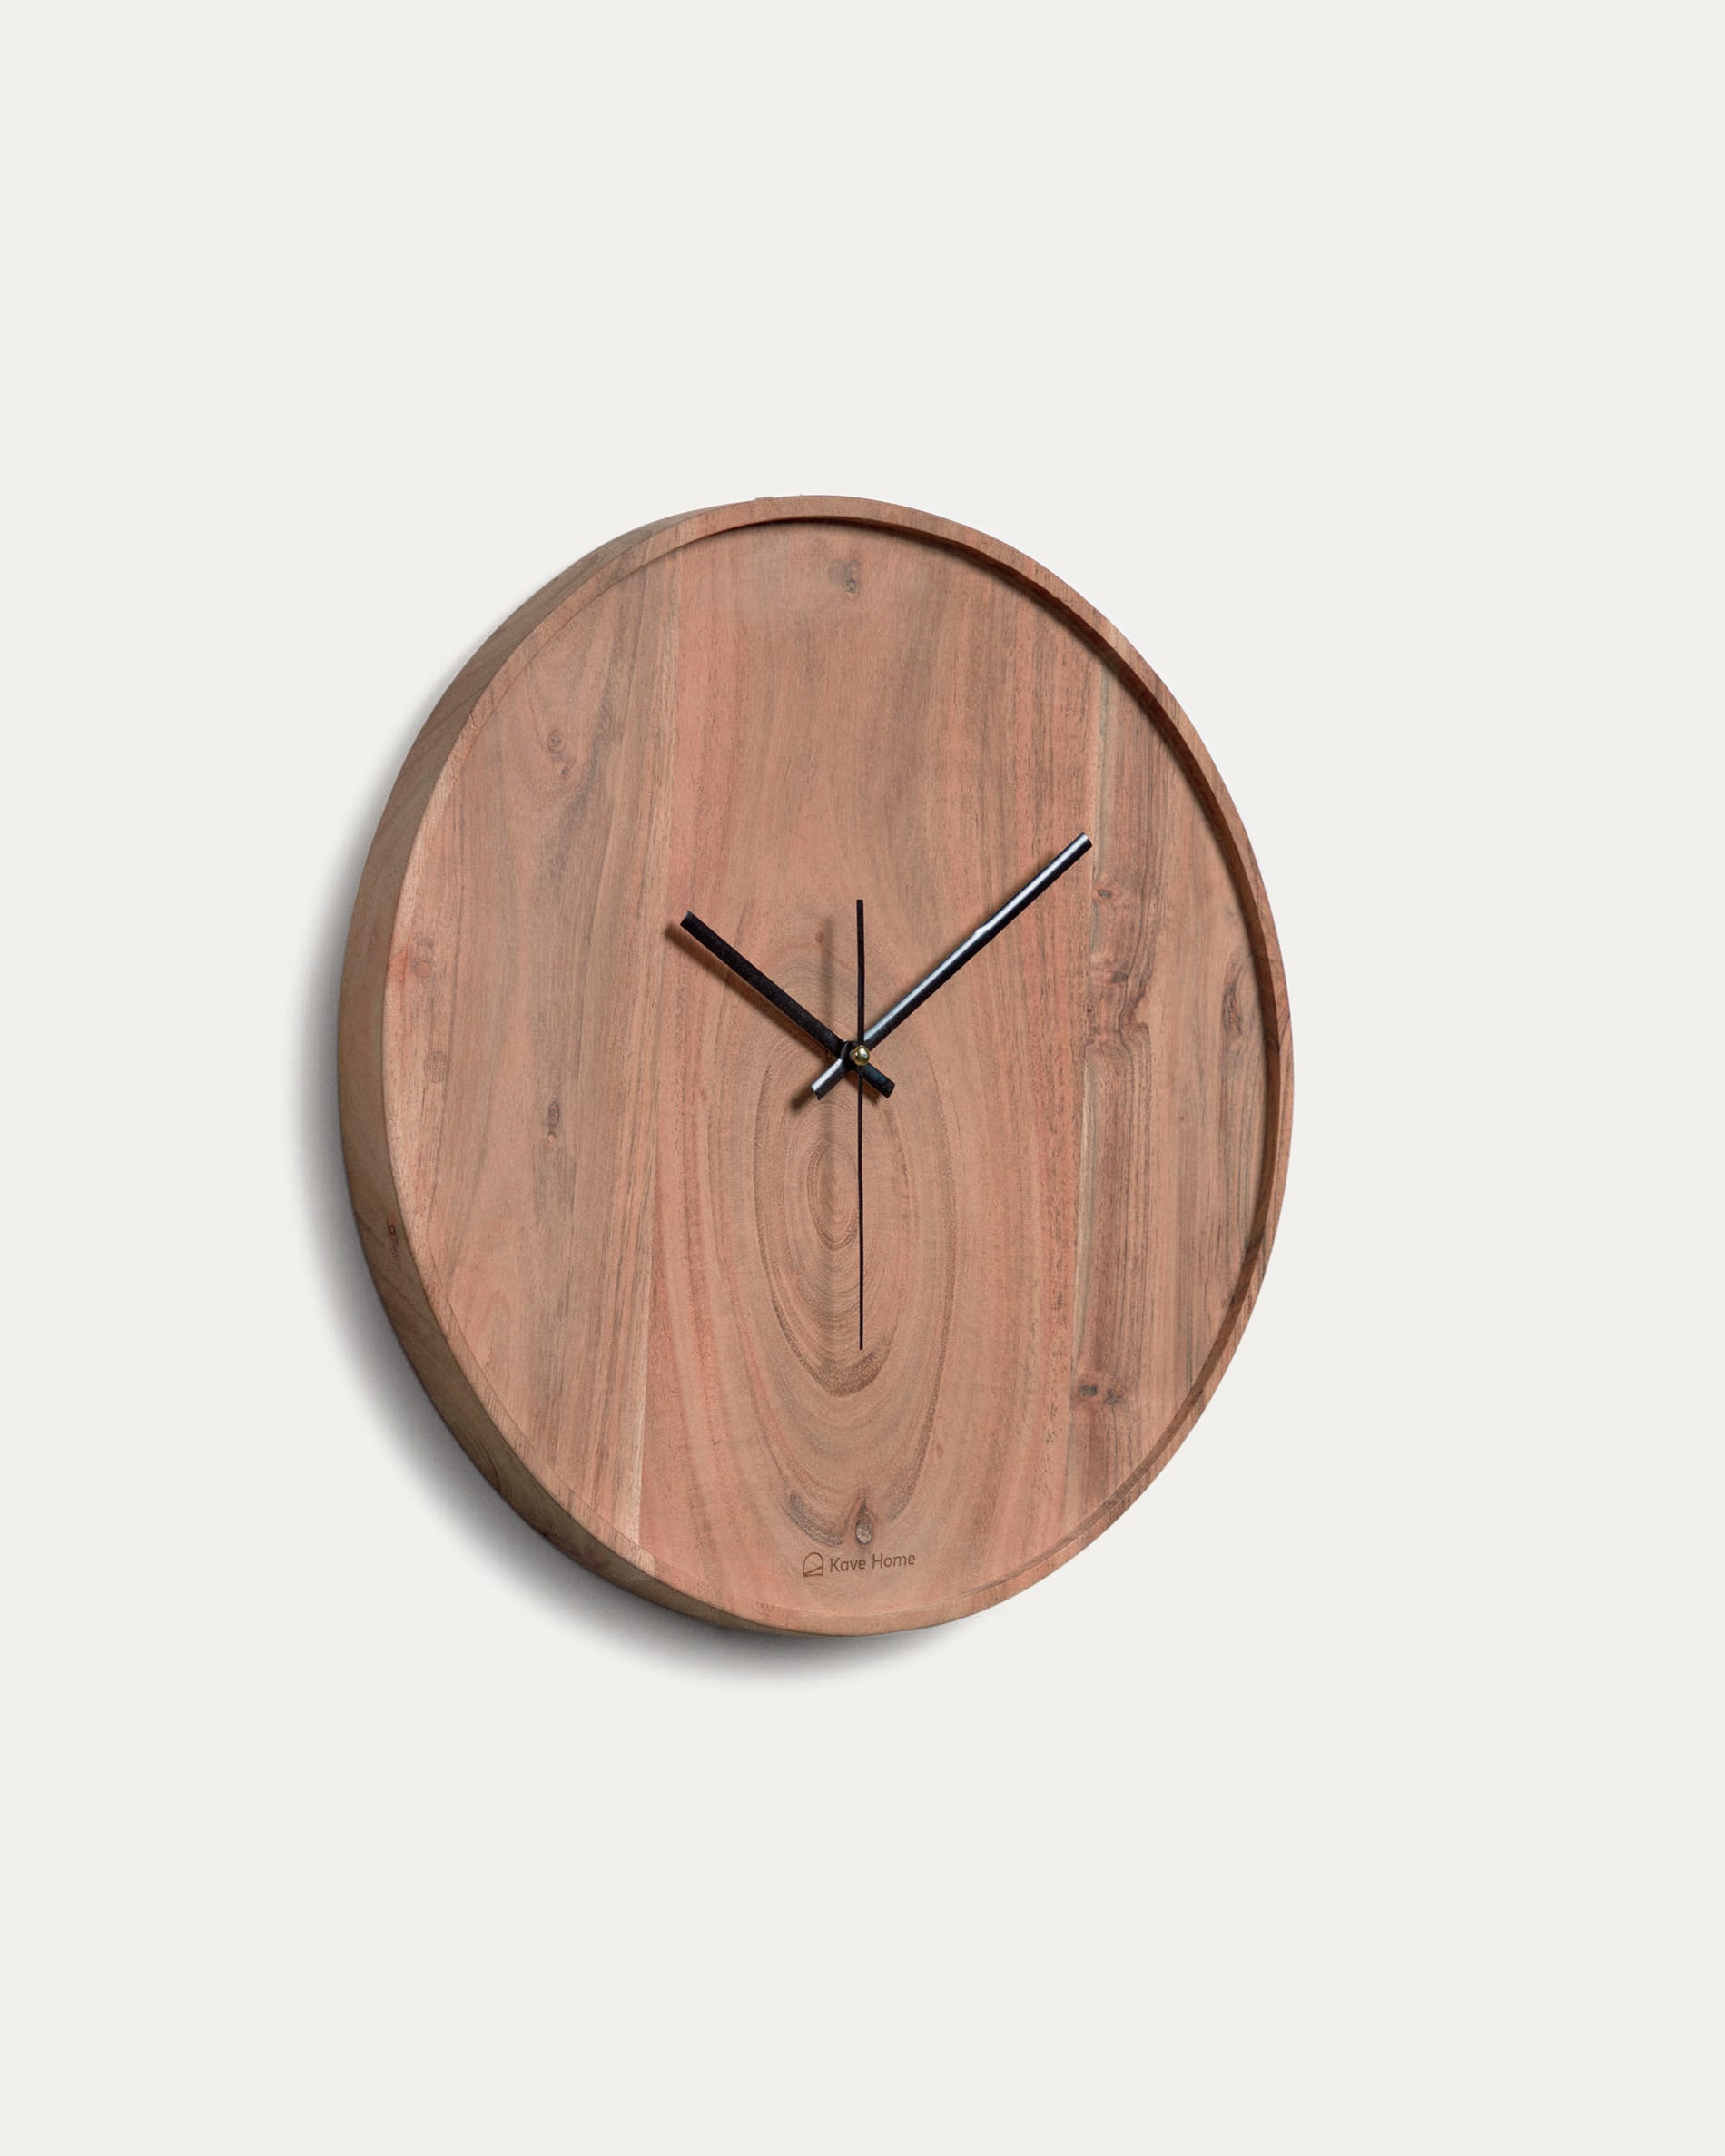 Relógio de Parede Wood 30cm